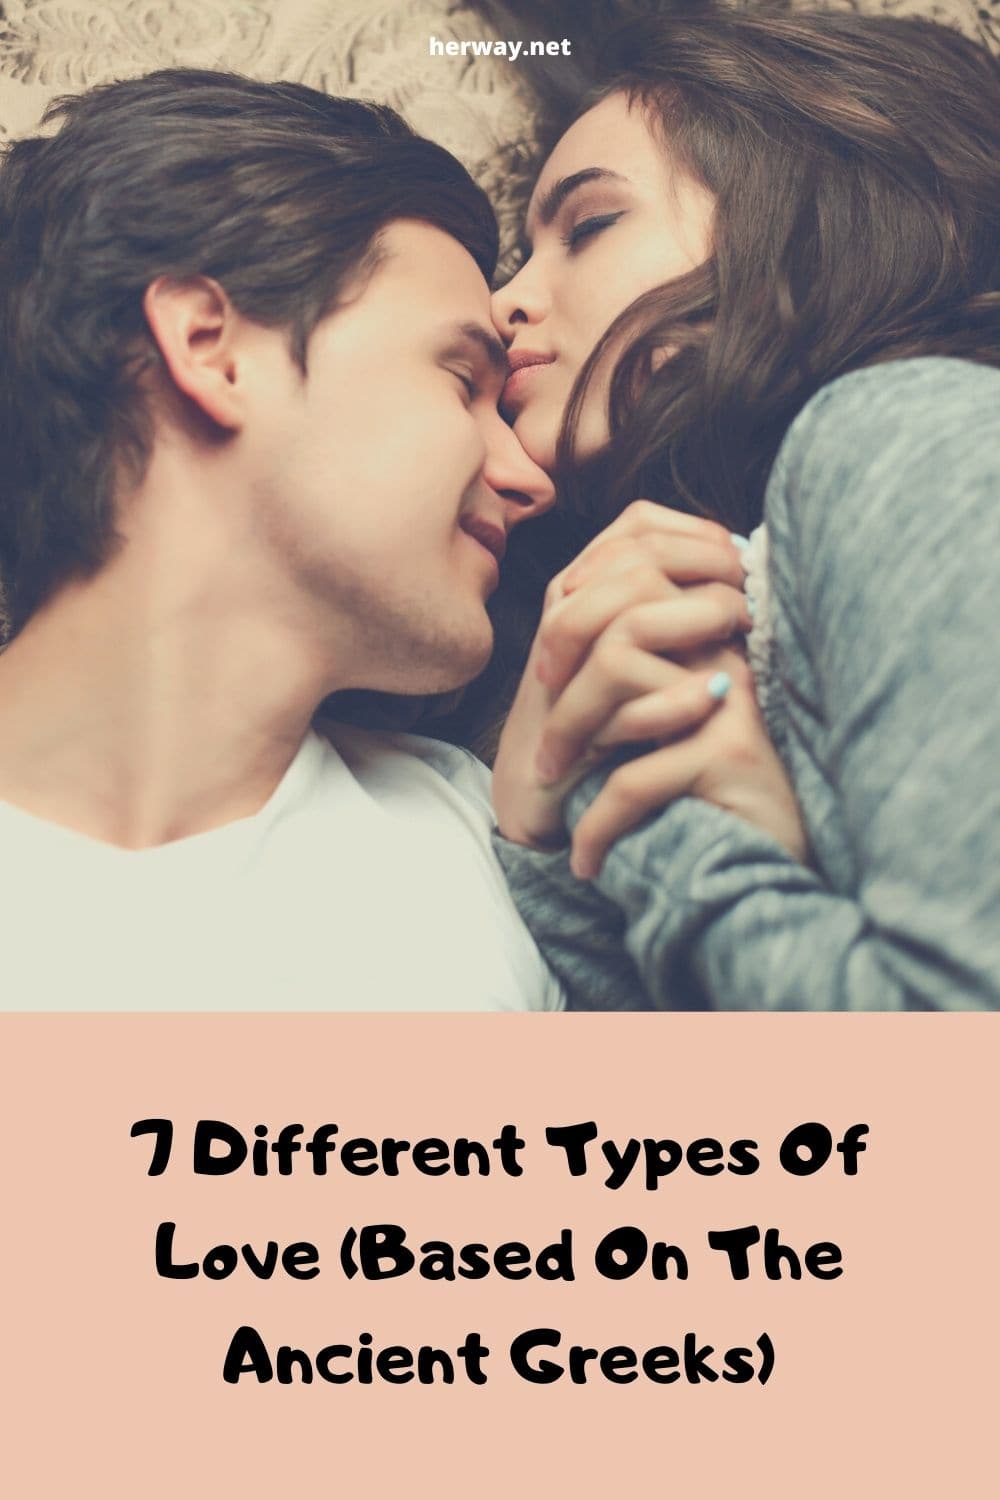 7 tipos diferentes de amor (baseados nos gregos antigos)